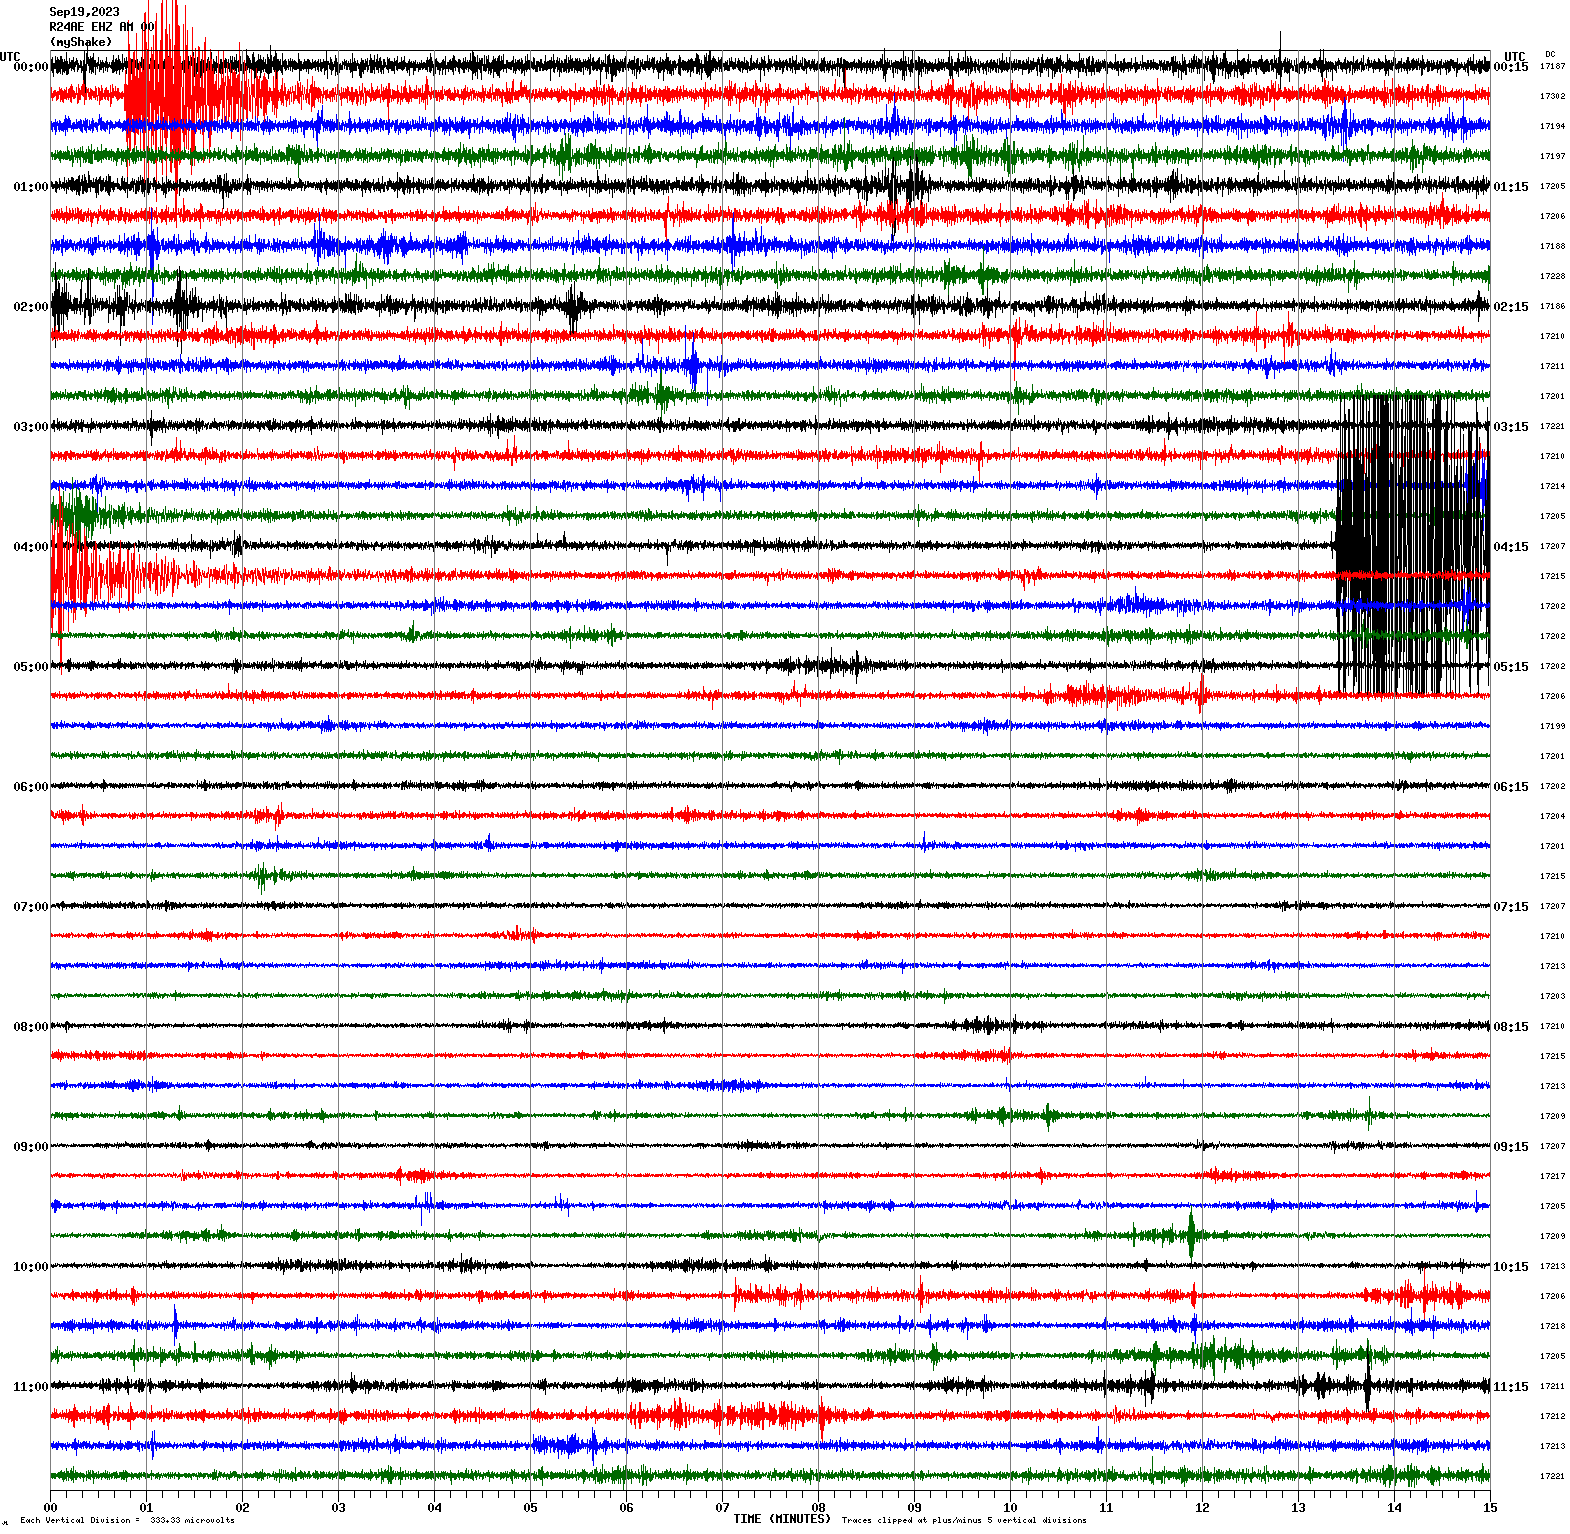 /seismic-data/R24AE/R24AE_EHZ_AM_00.2023091900.gif